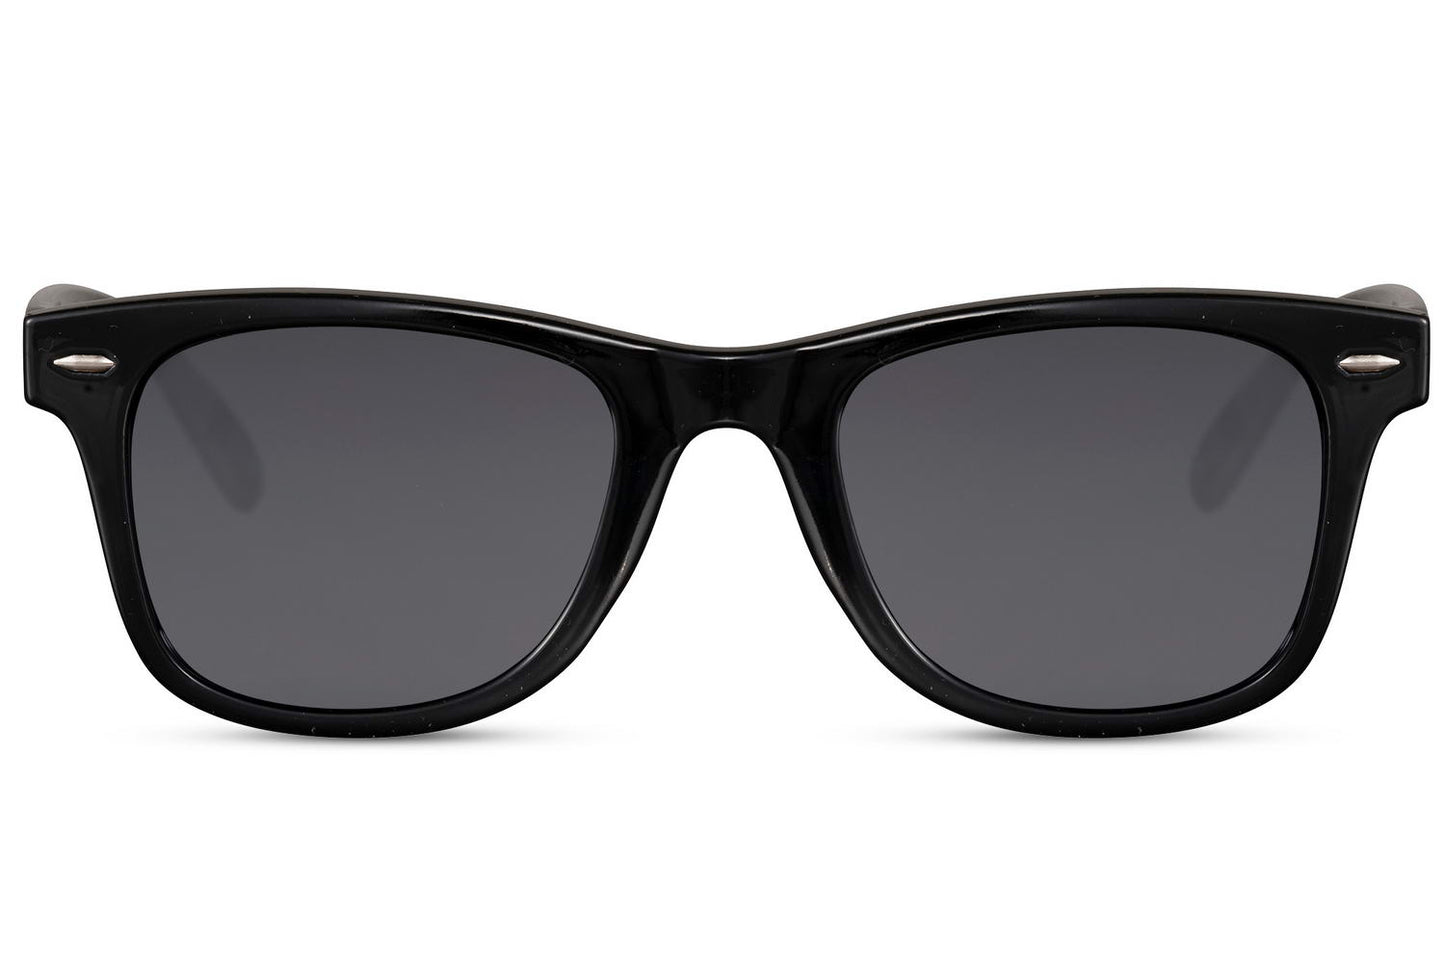 Wayfarer Mirrored Sunglasses